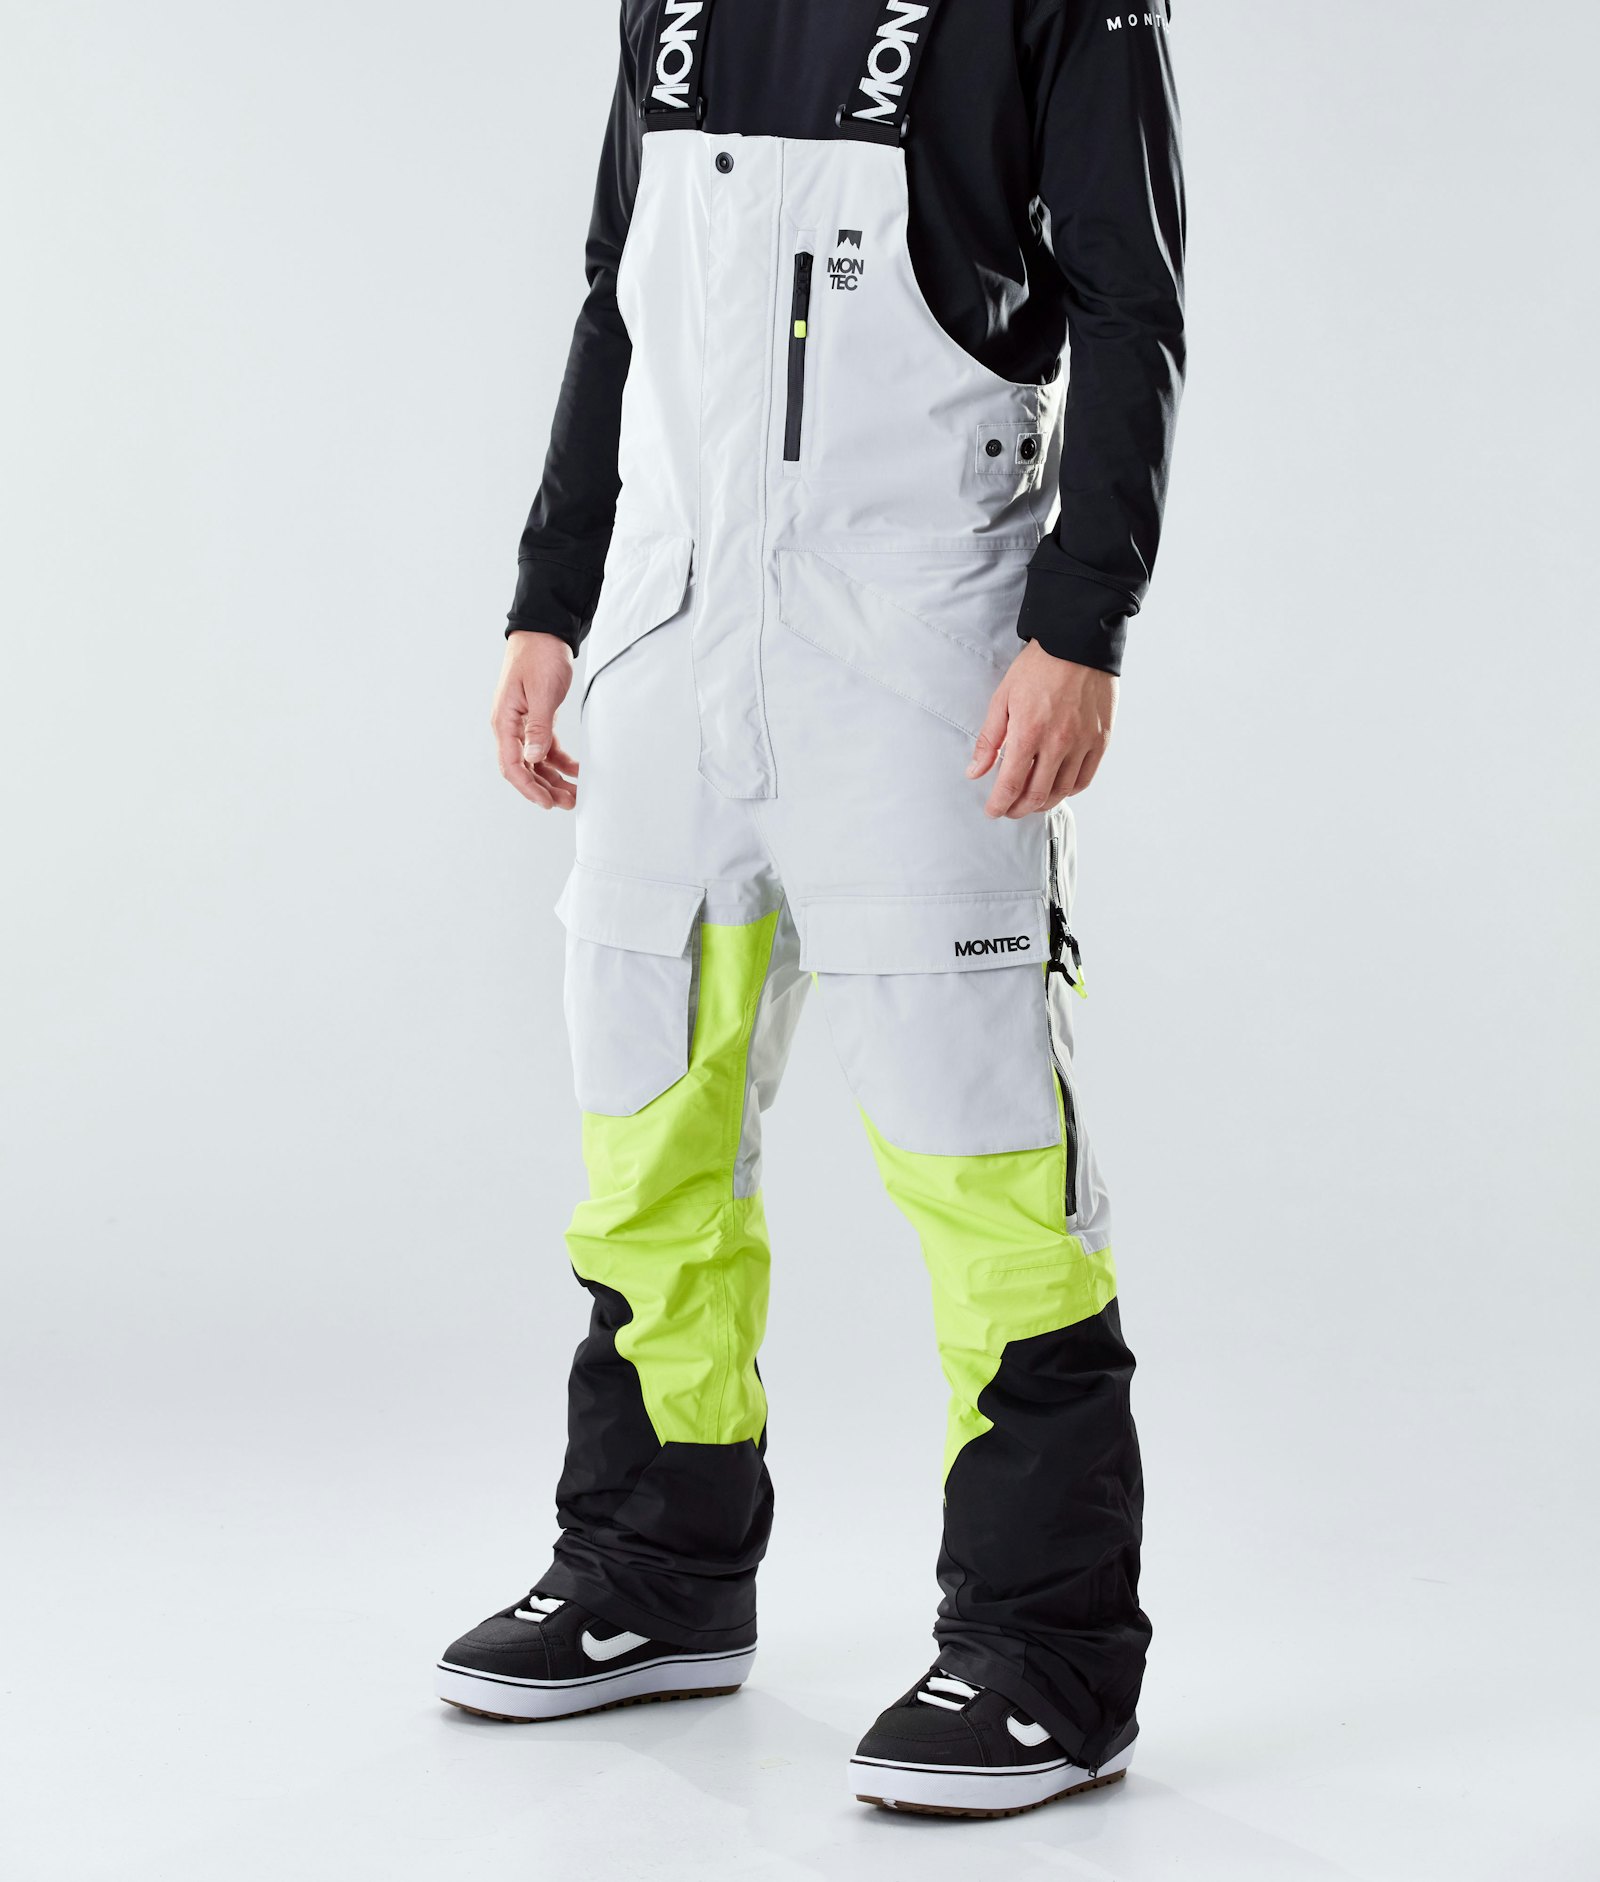 Fawk 2020 Snowboardhose Herren Light Grey/Neon Yellow/Black Renewed, Bild 1 von 6